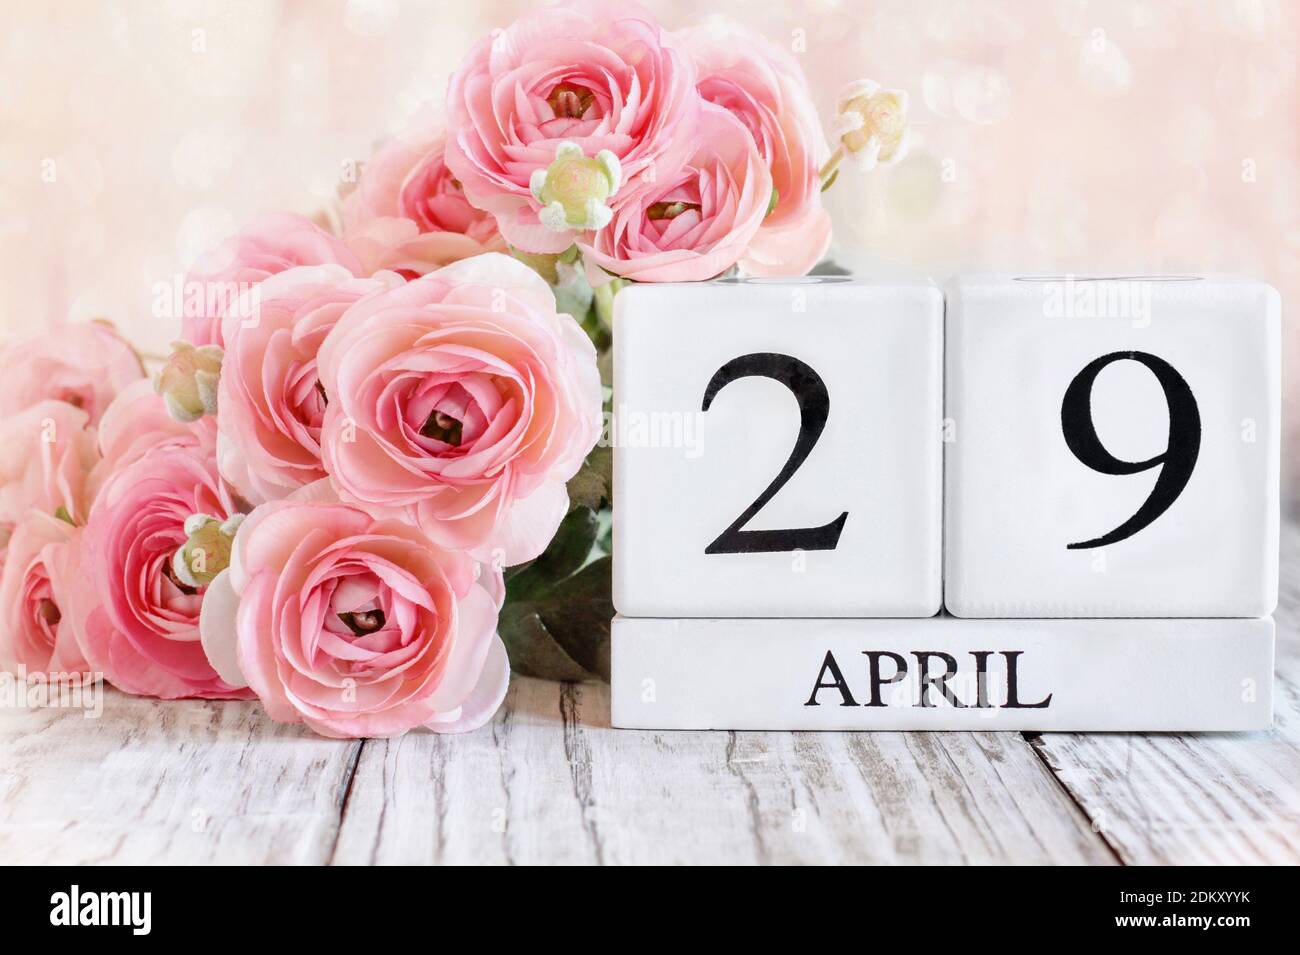 Blocs de calendrier en bois blanc avec la date du 29 avril. Mise au point sélective avec arrière-plan flou. Banque D'Images